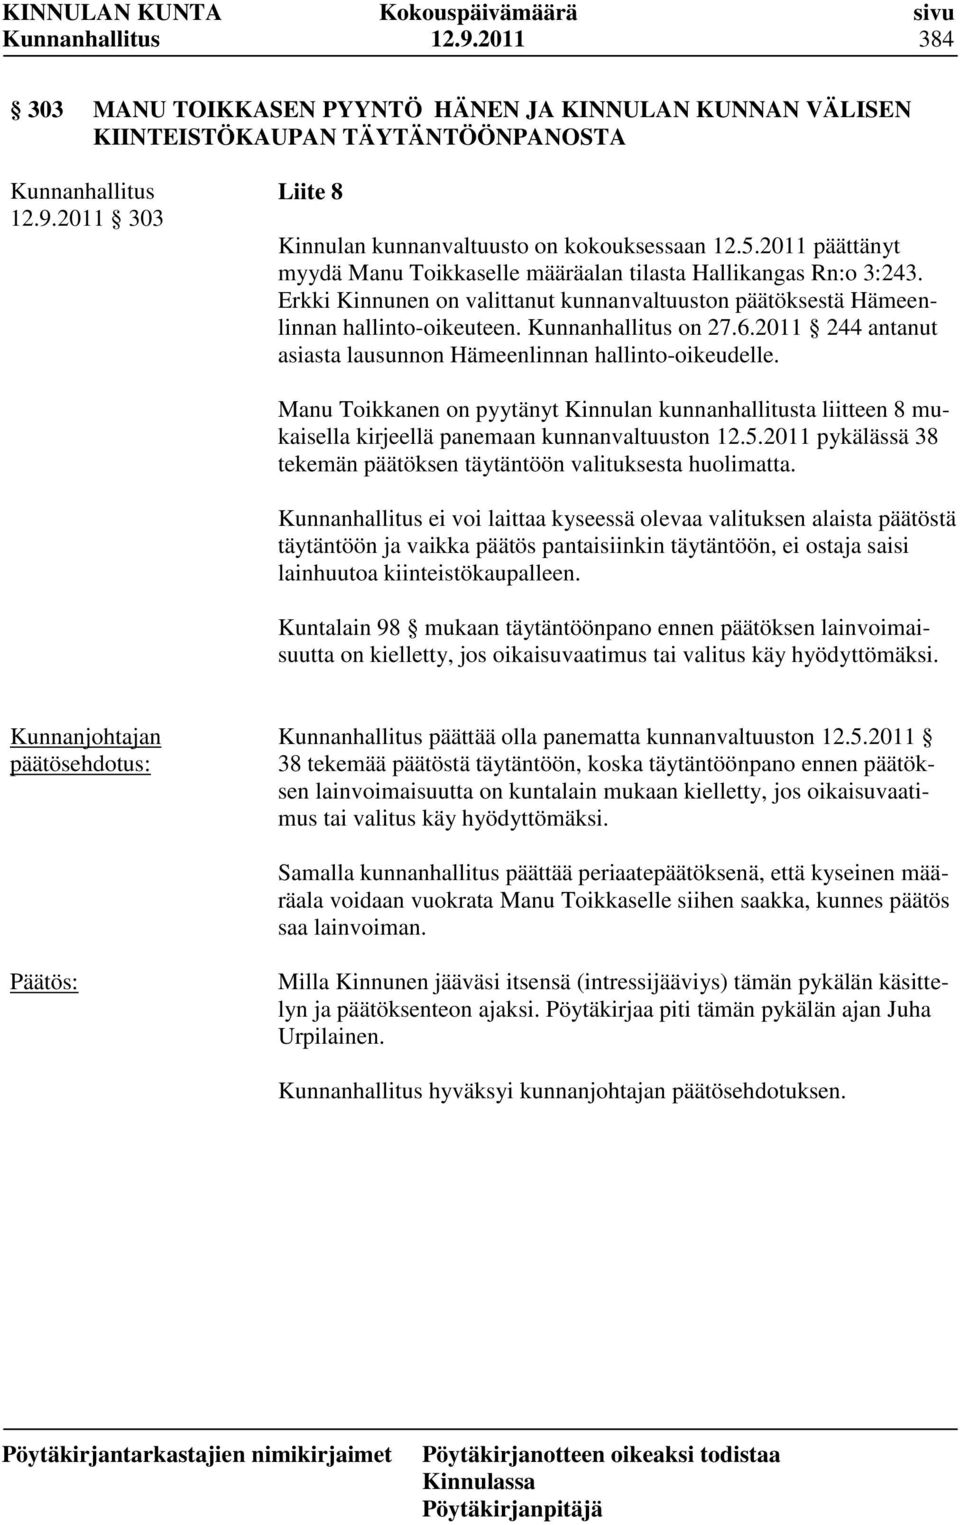 2011 244 antanut asiasta lausunnon Hämeenlinnan hallinto-oikeudelle. Manu Toikkanen on pyytänyt Kinnulan kunnanhallitusta liitteen 8 mukaisella kirjeellä panemaan kunnanvaltuuston 12.5.